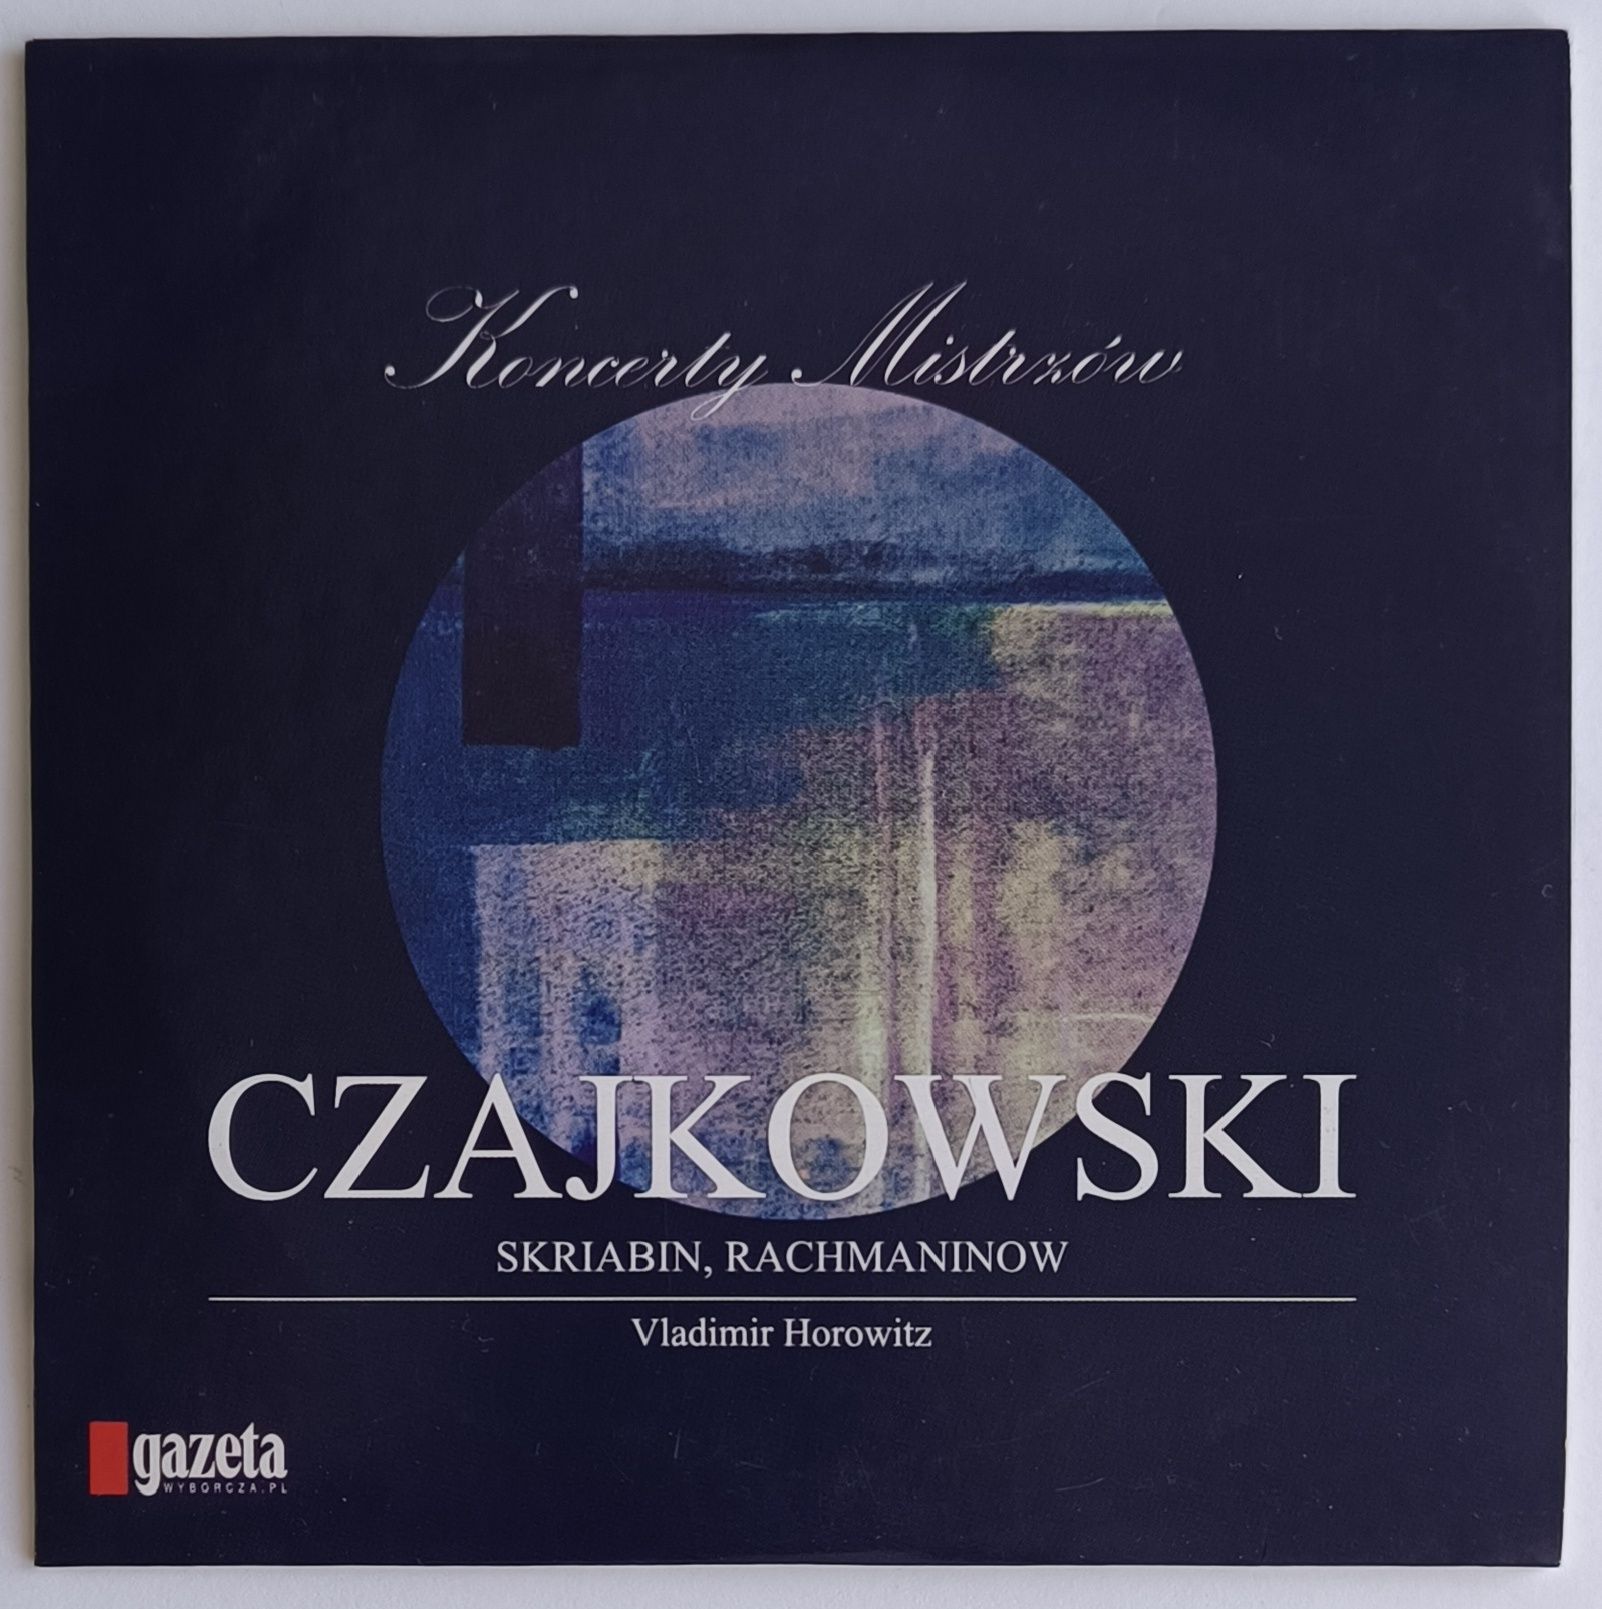 Koncerty Mistrzów Czajkowski Nr5 2015r